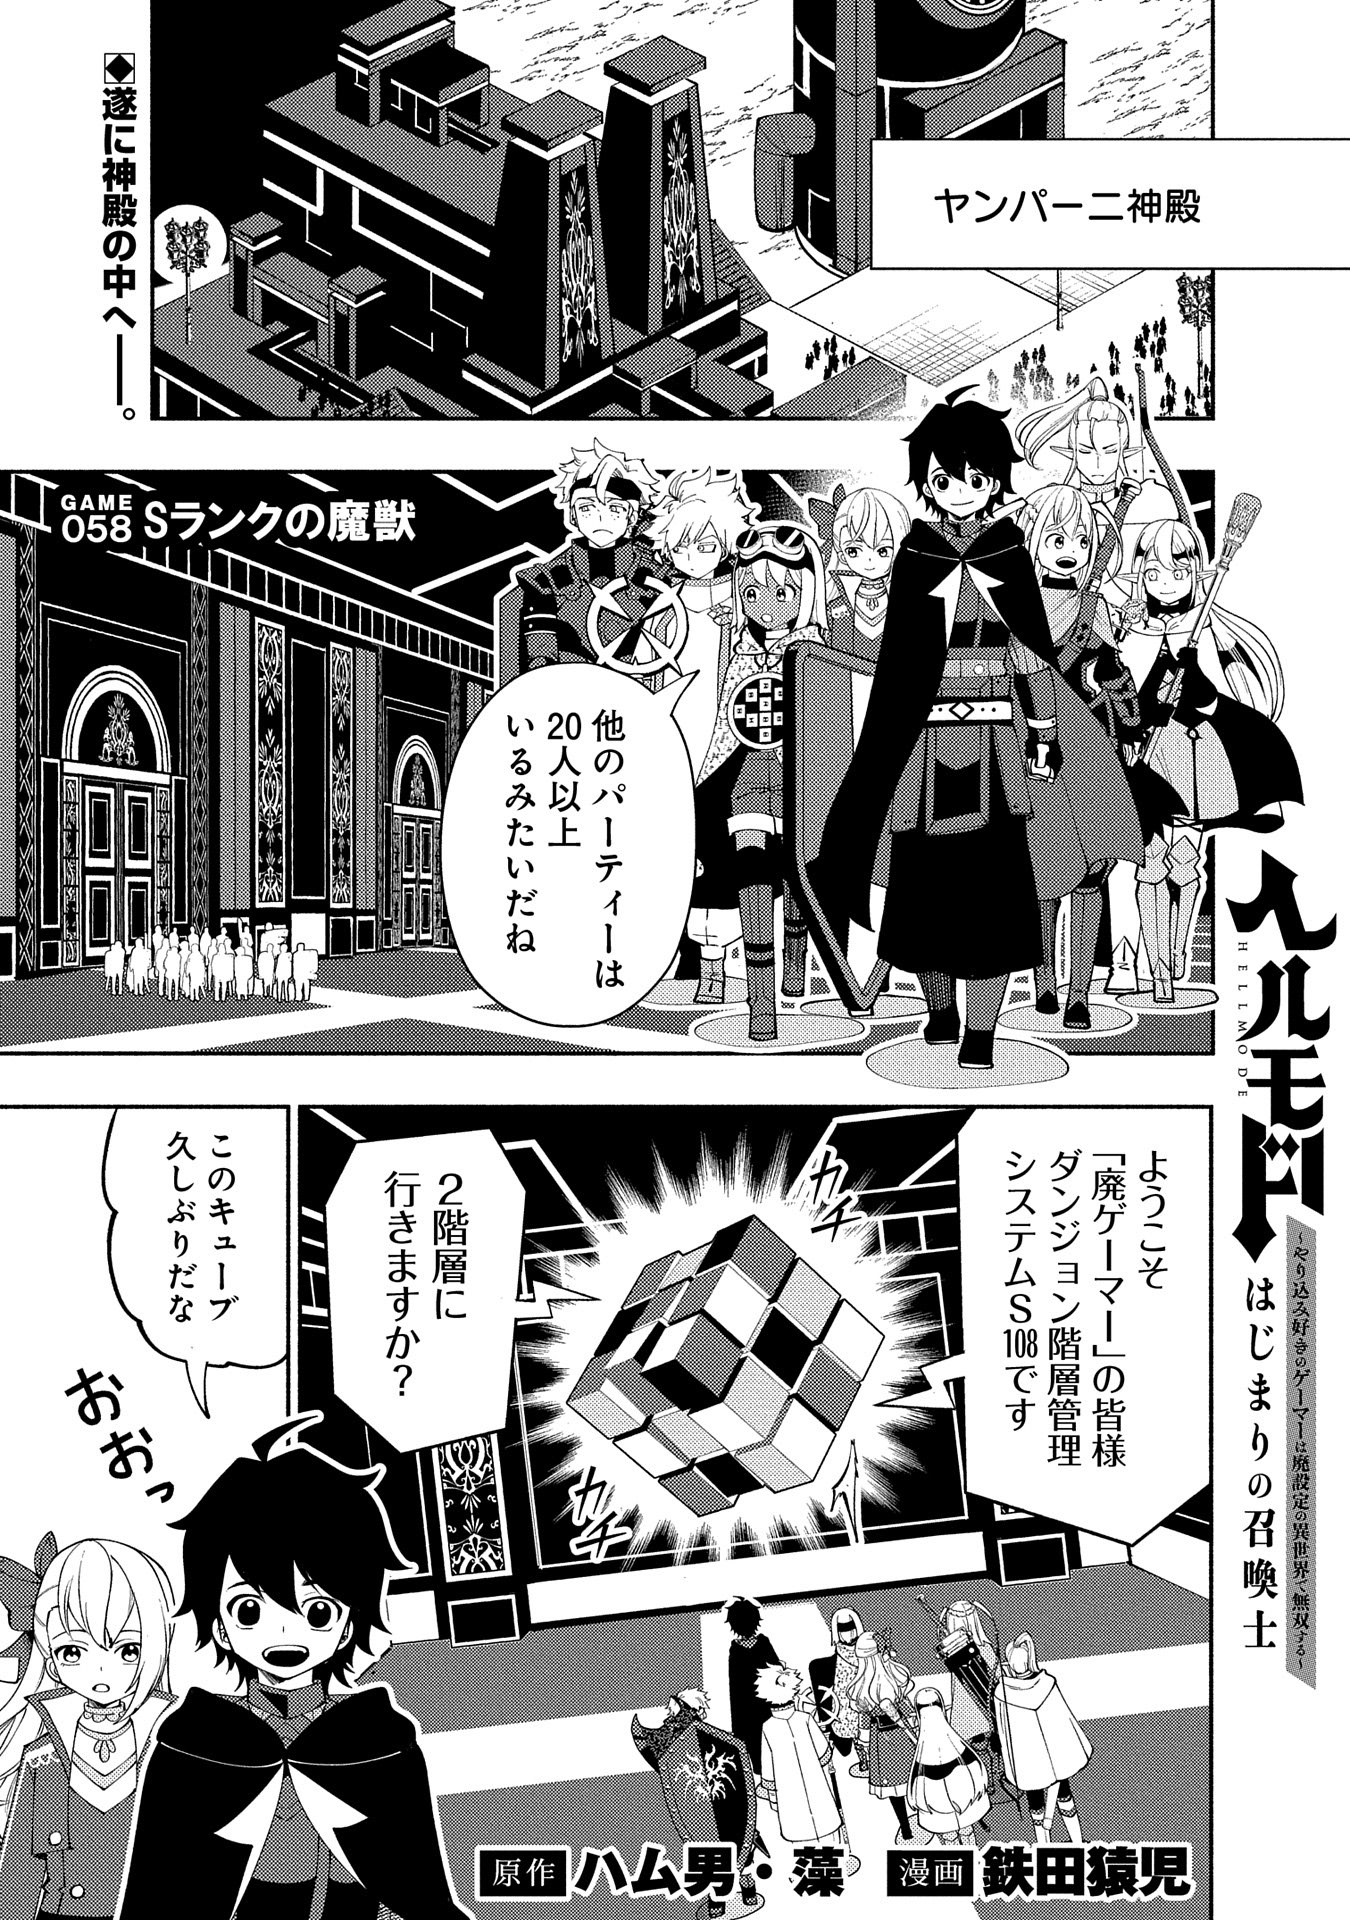 Hell Mode: Yarikomi Suki no Gamer wa Hai Settei no Isekai de Musou Suru - Chapter 58 - Page 1